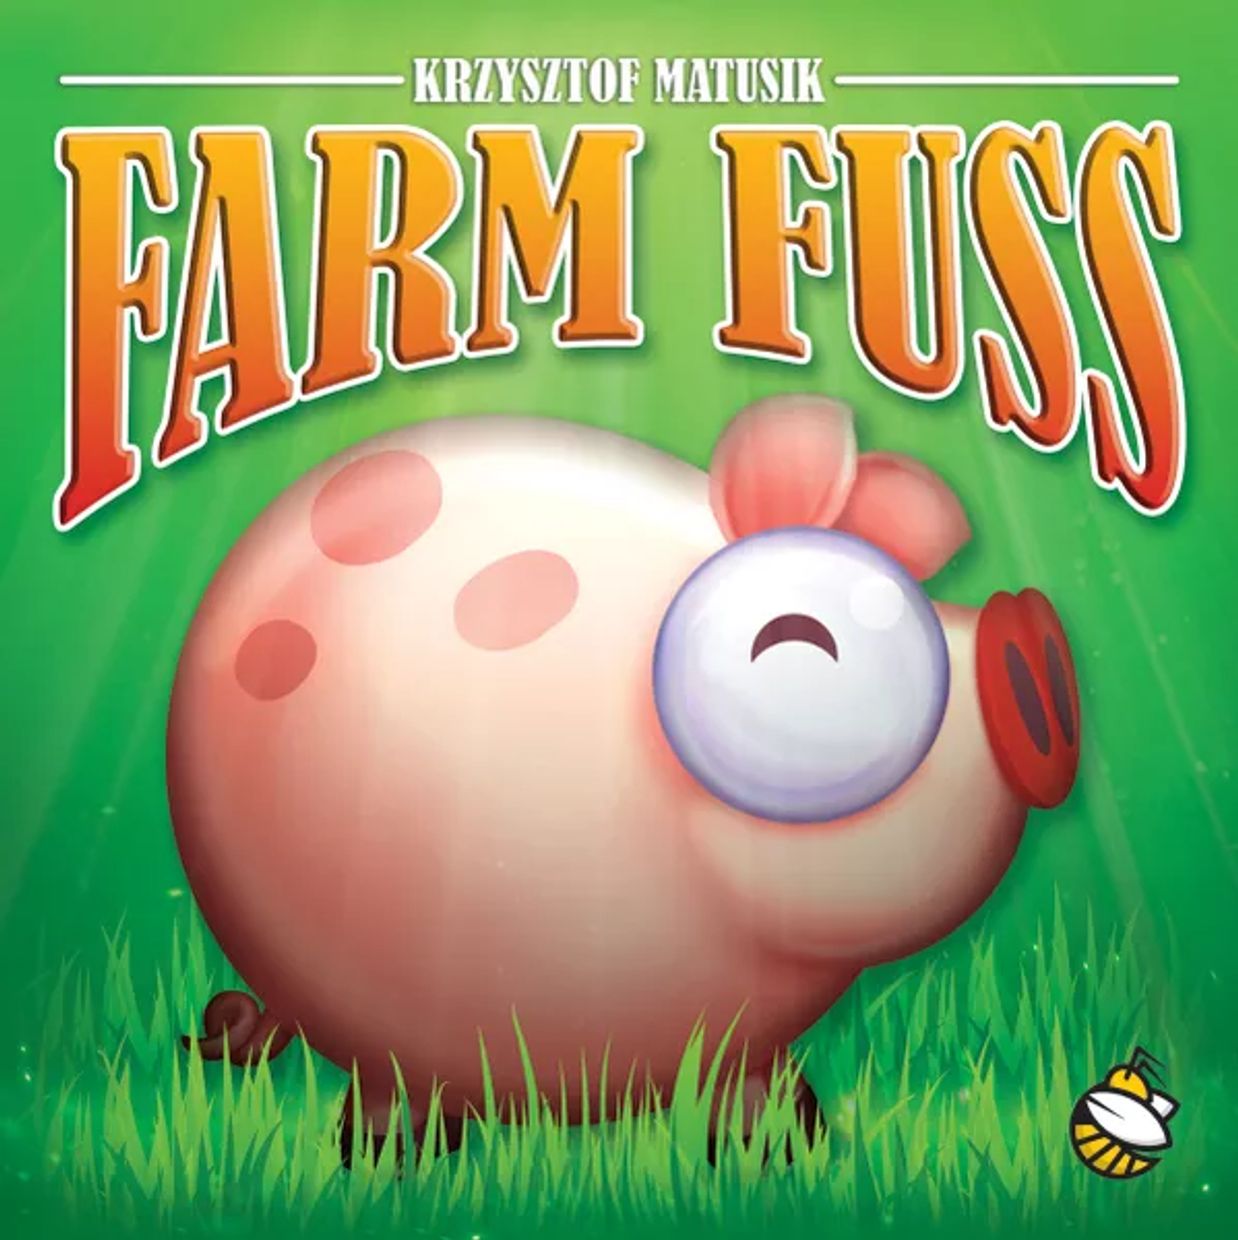 Farm Fuss